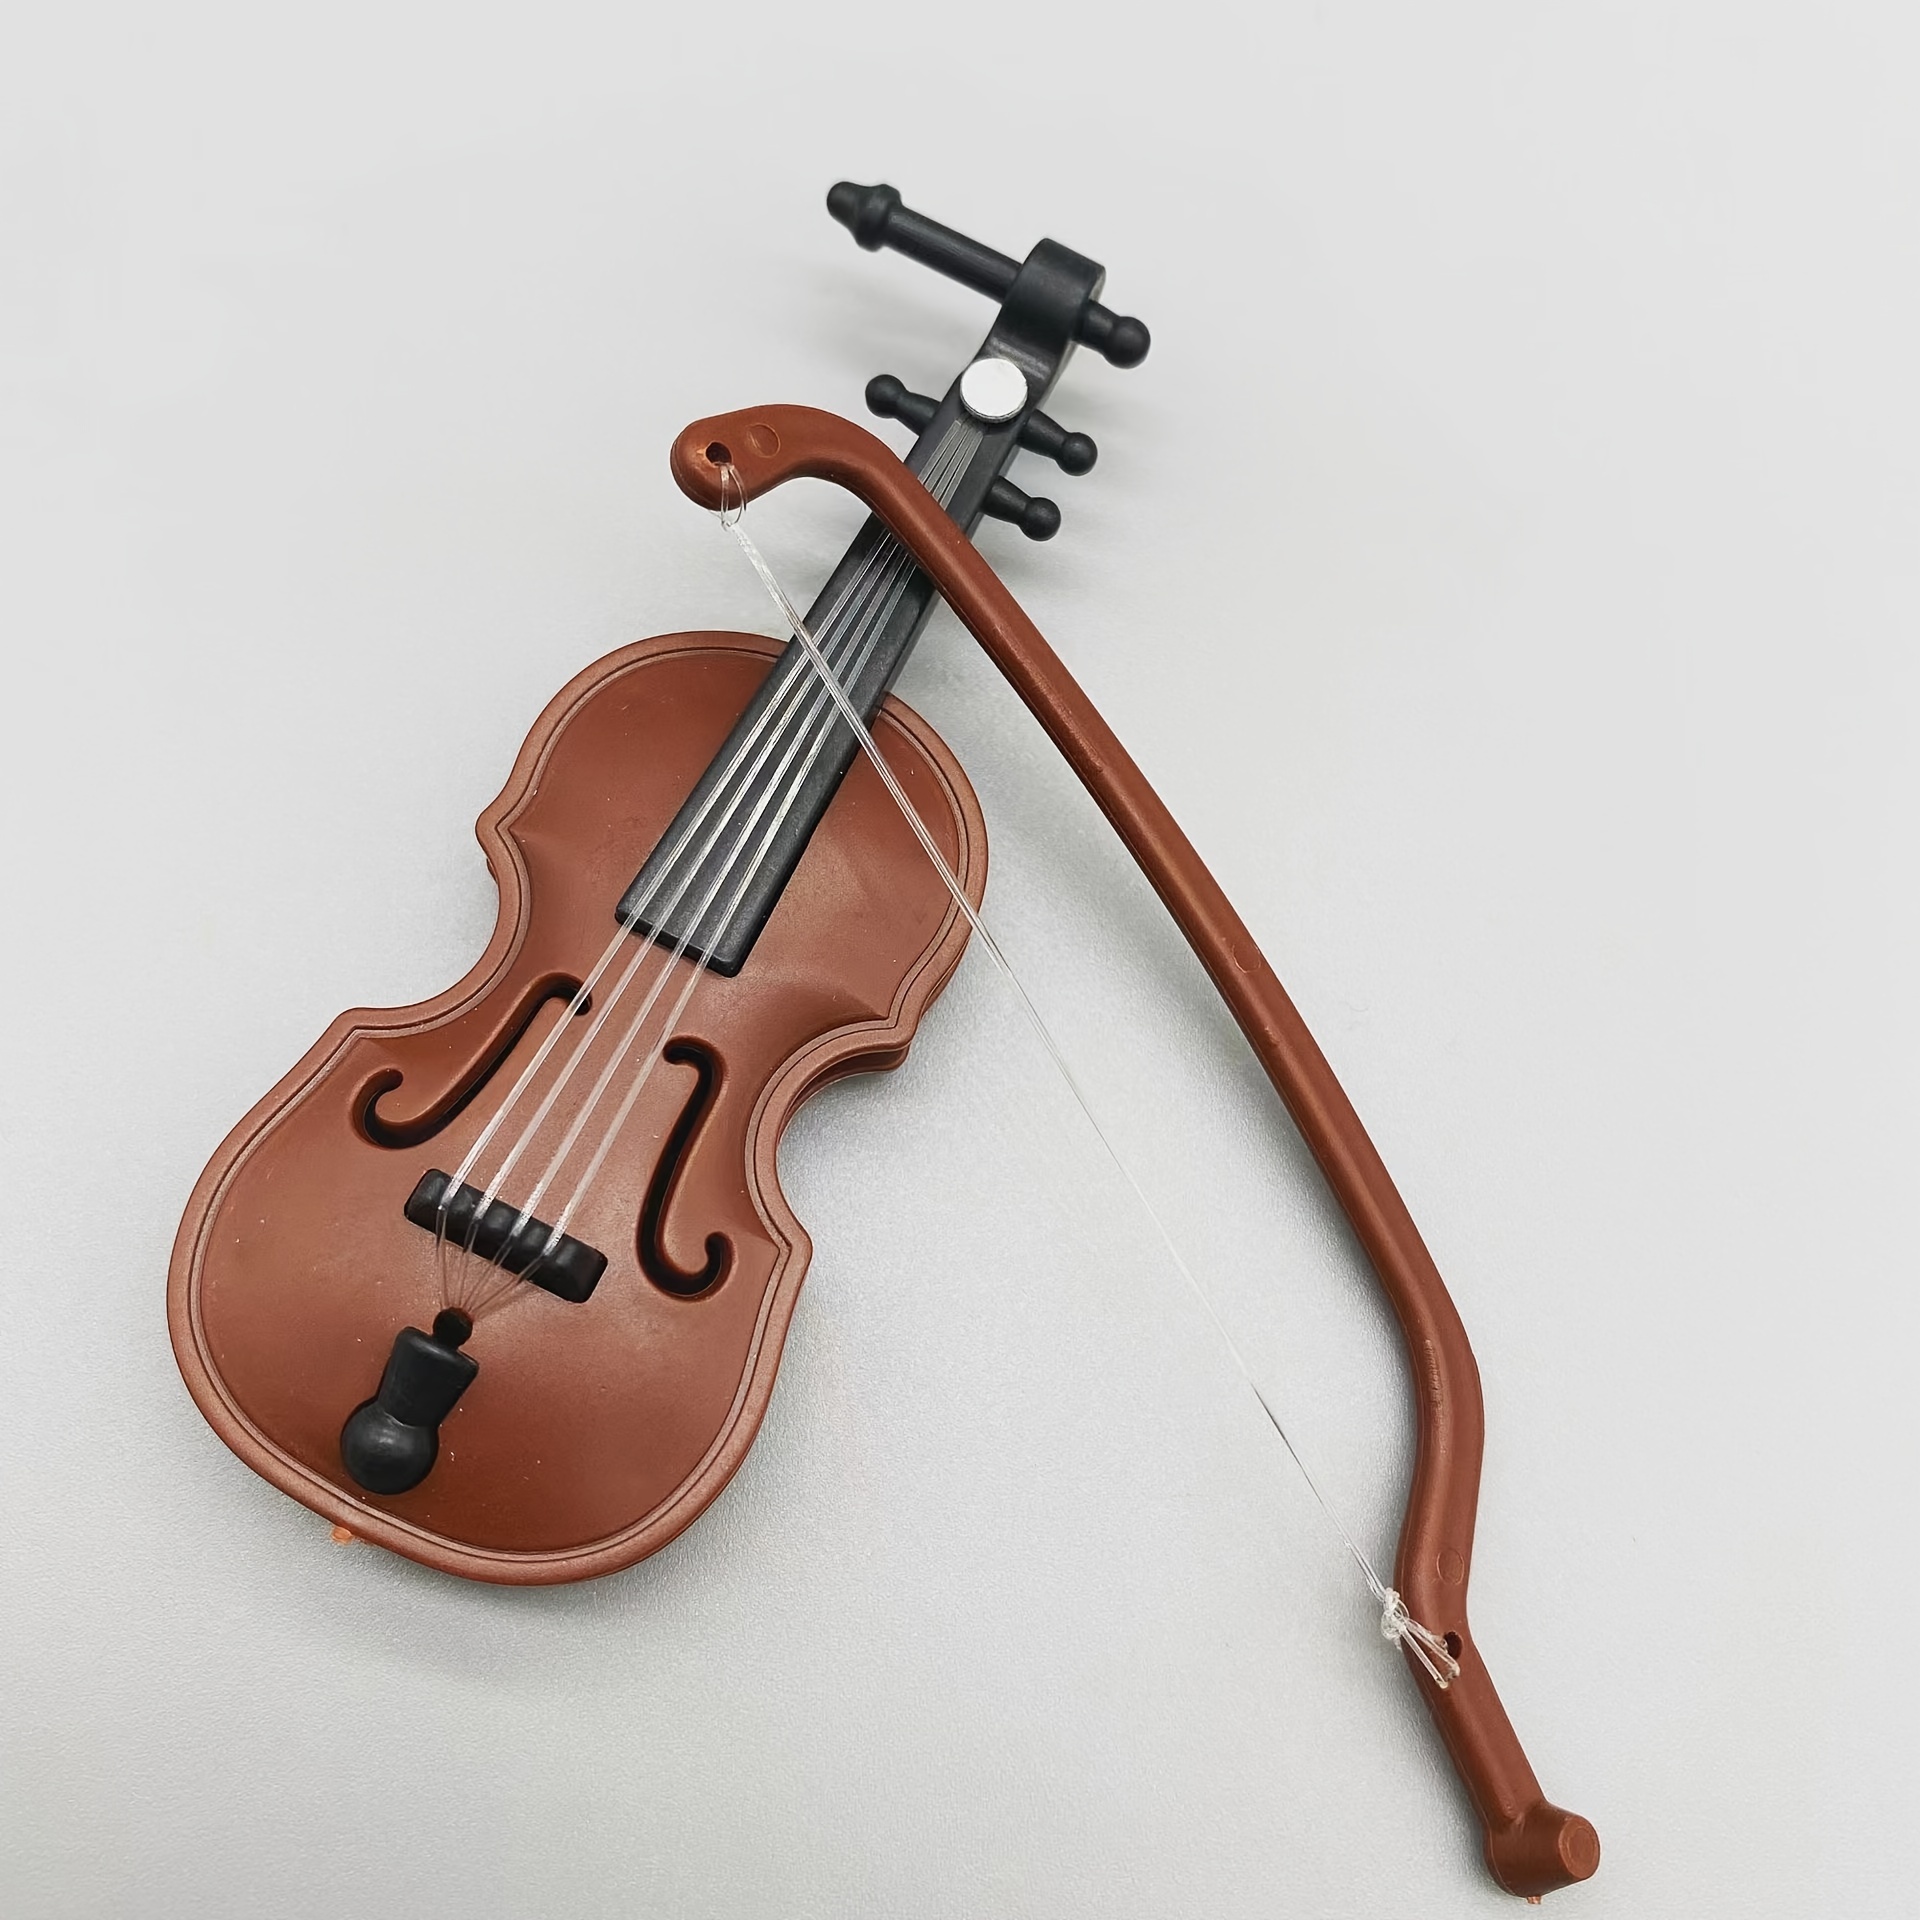 Mini Violin Props for Dollhouse Decoration